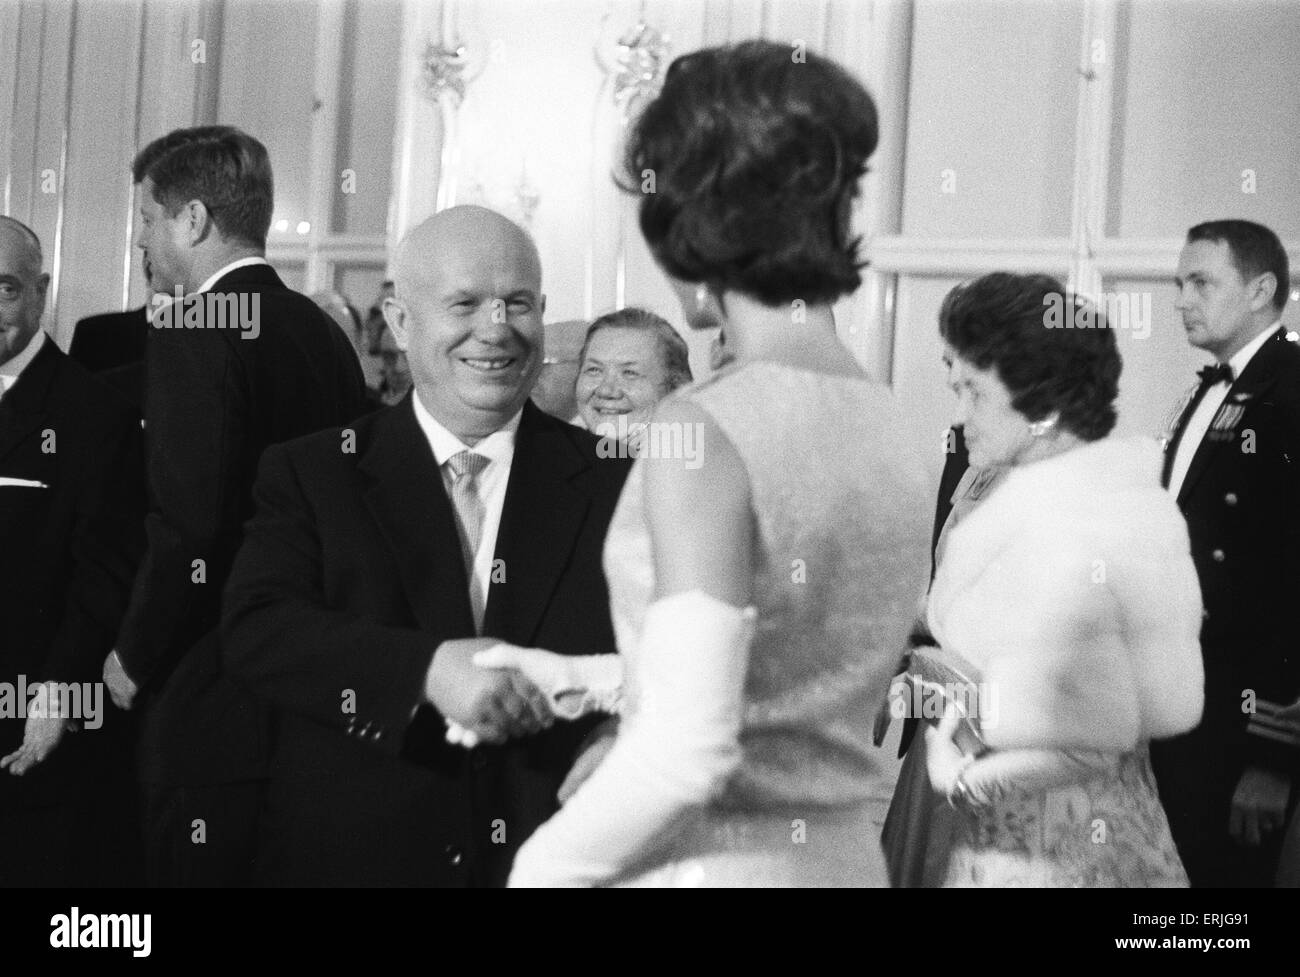 La visita del Presidente americano John F Kennedy a Vienna, Austria per colloqui con il Premier sovietico Nikita Khrushchev. Il Premier sovietico saluta la First Lady Jackie Kennedy. Il 3 giugno 1961. Foto Stock